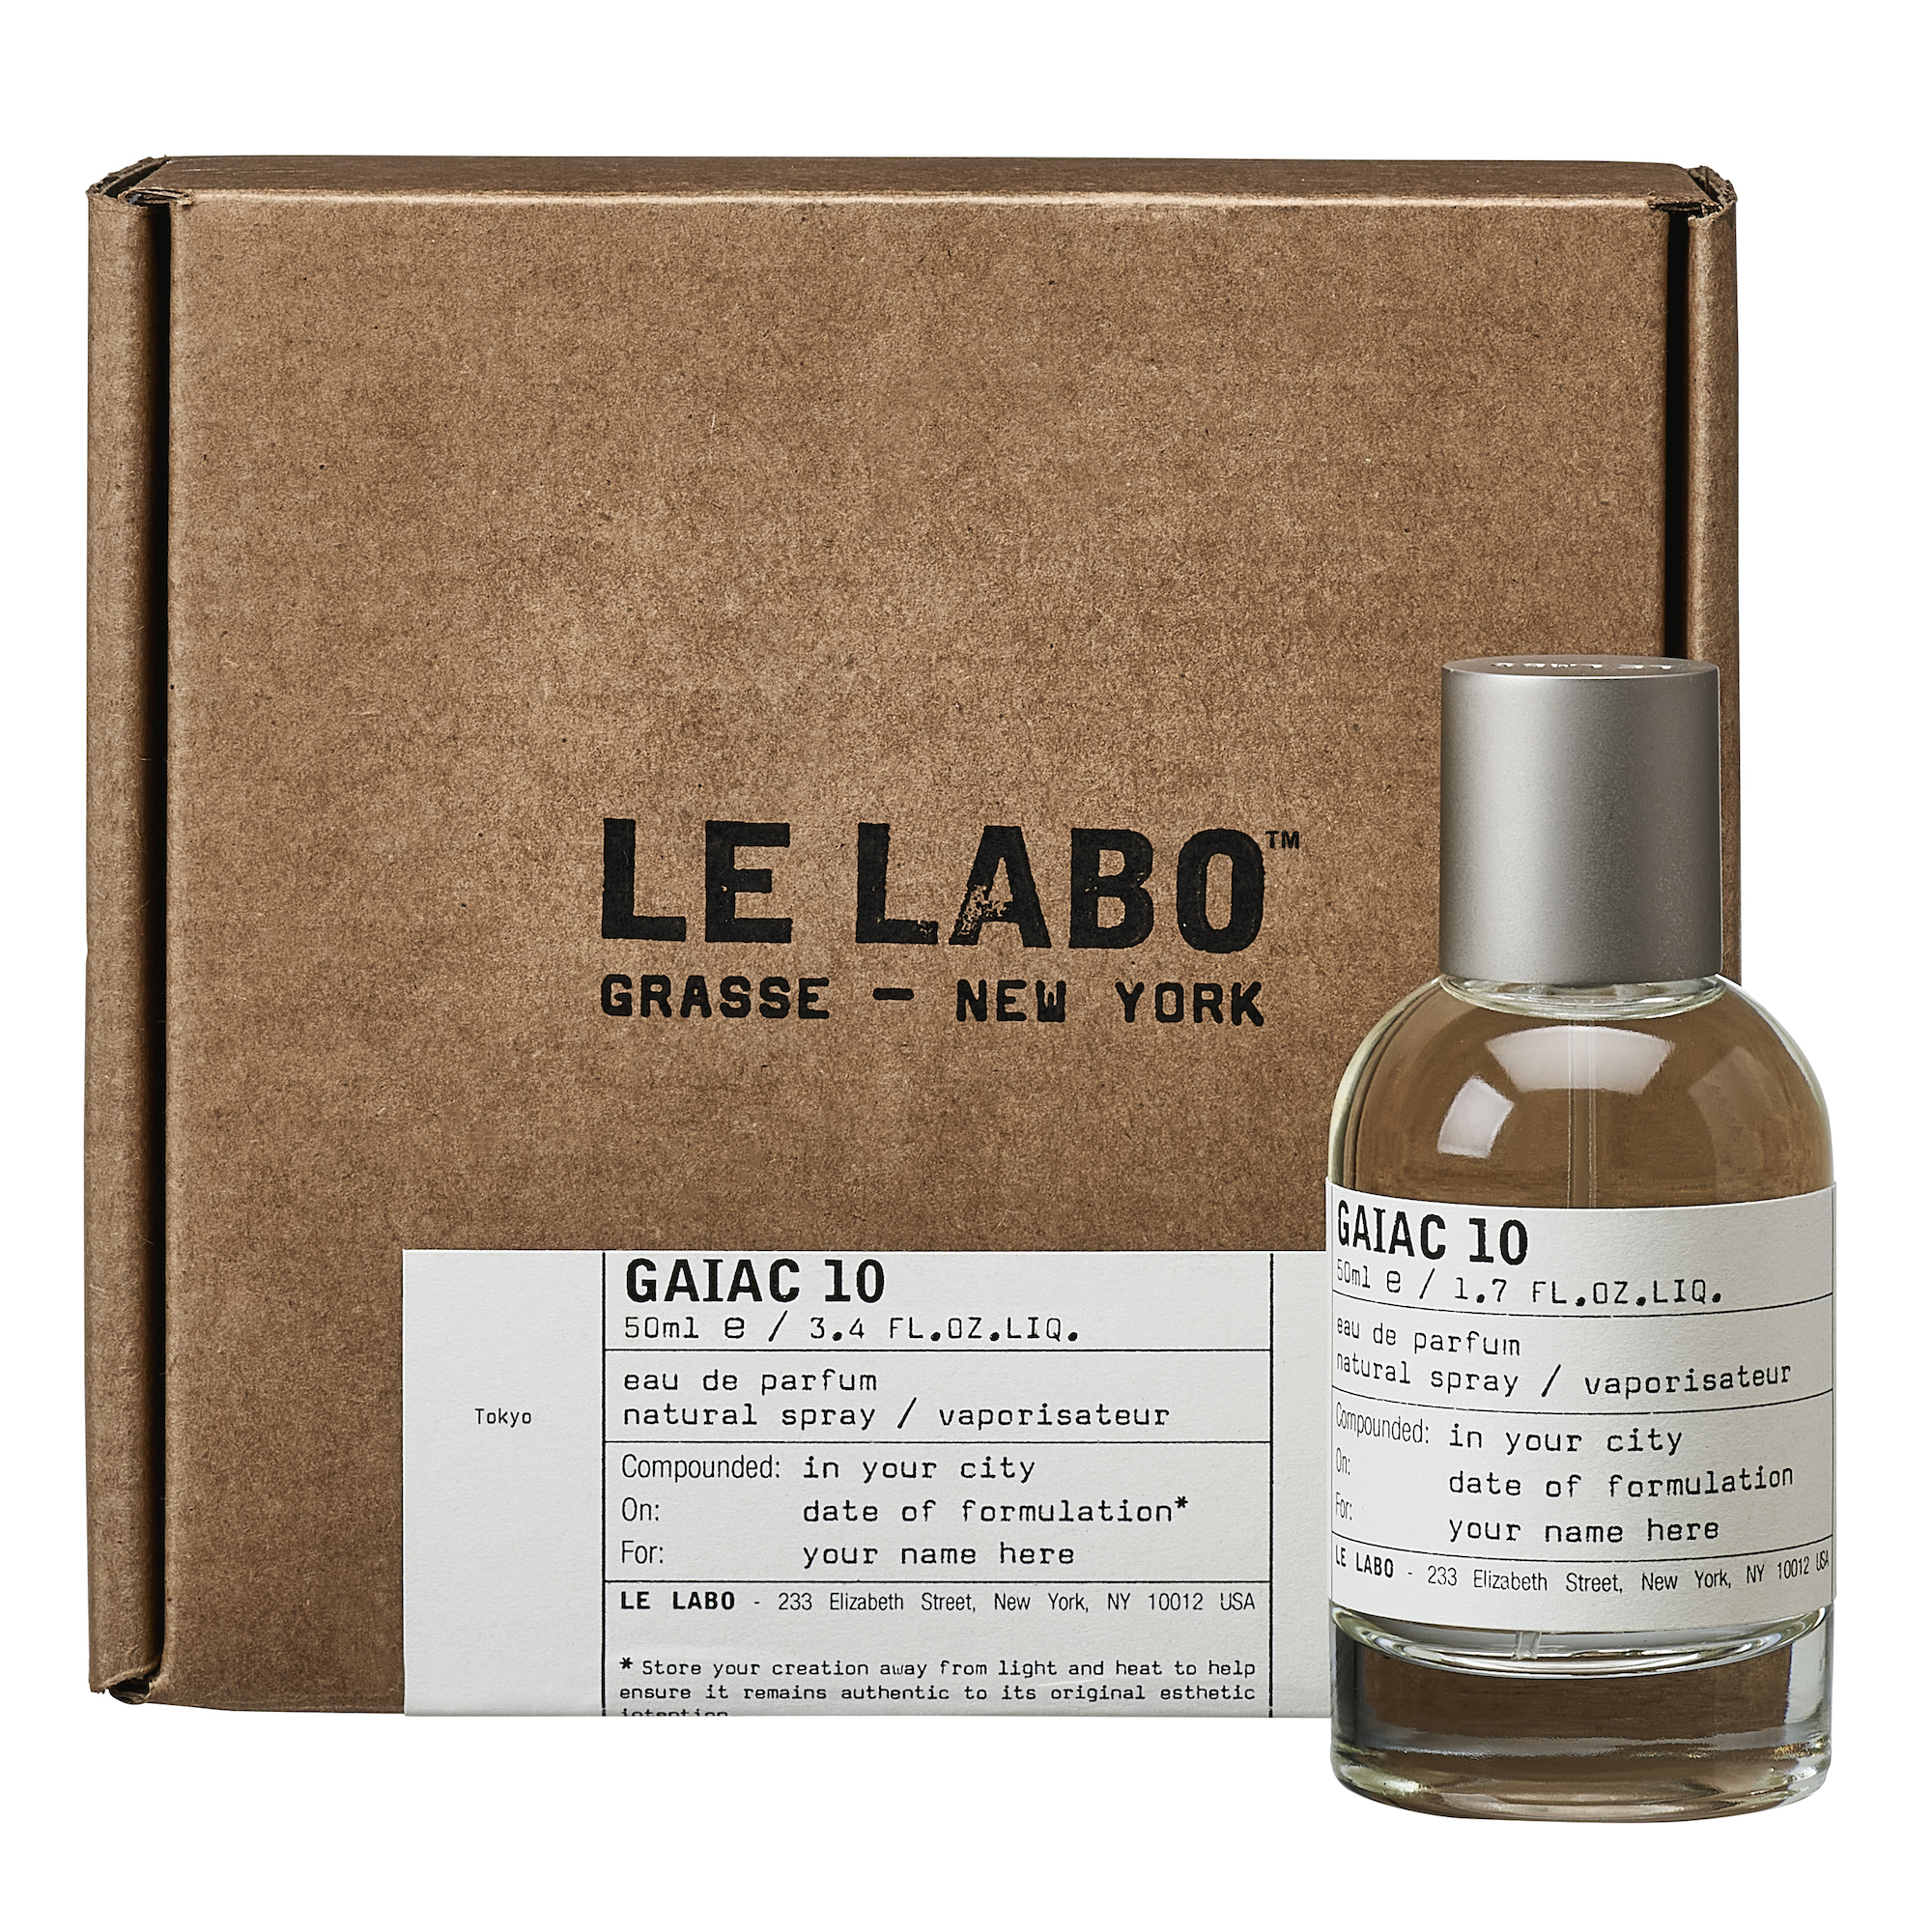 Le Labo城市限定旨在致敬全世界我们宏爱的城市